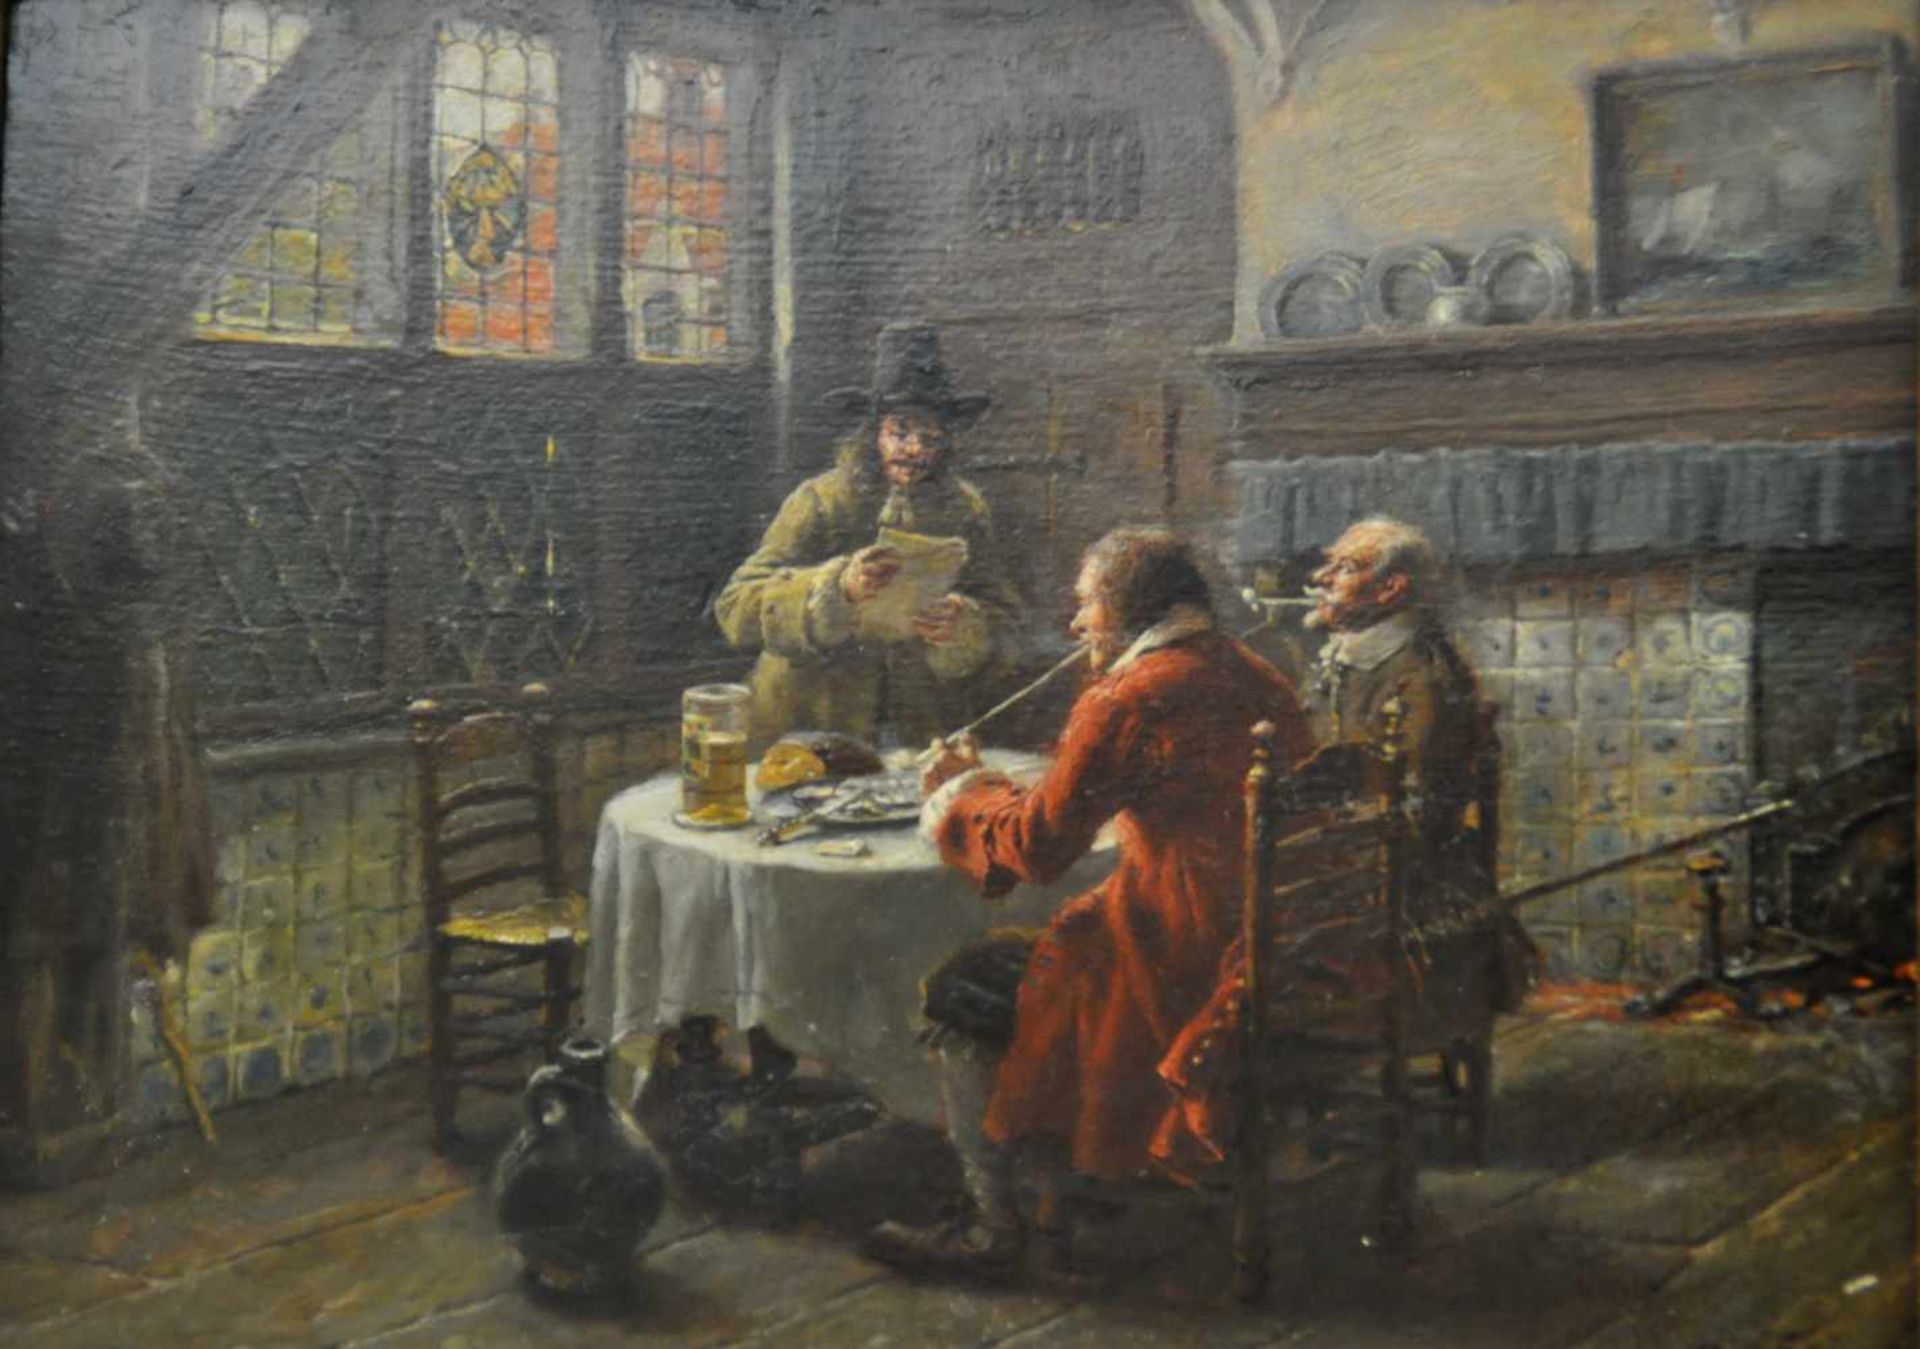 Gaisser, Max (1857 - 1922), "Beim Notar", Öl auf Holz, 24,0 x 32,0 cm, rechts unten signiert